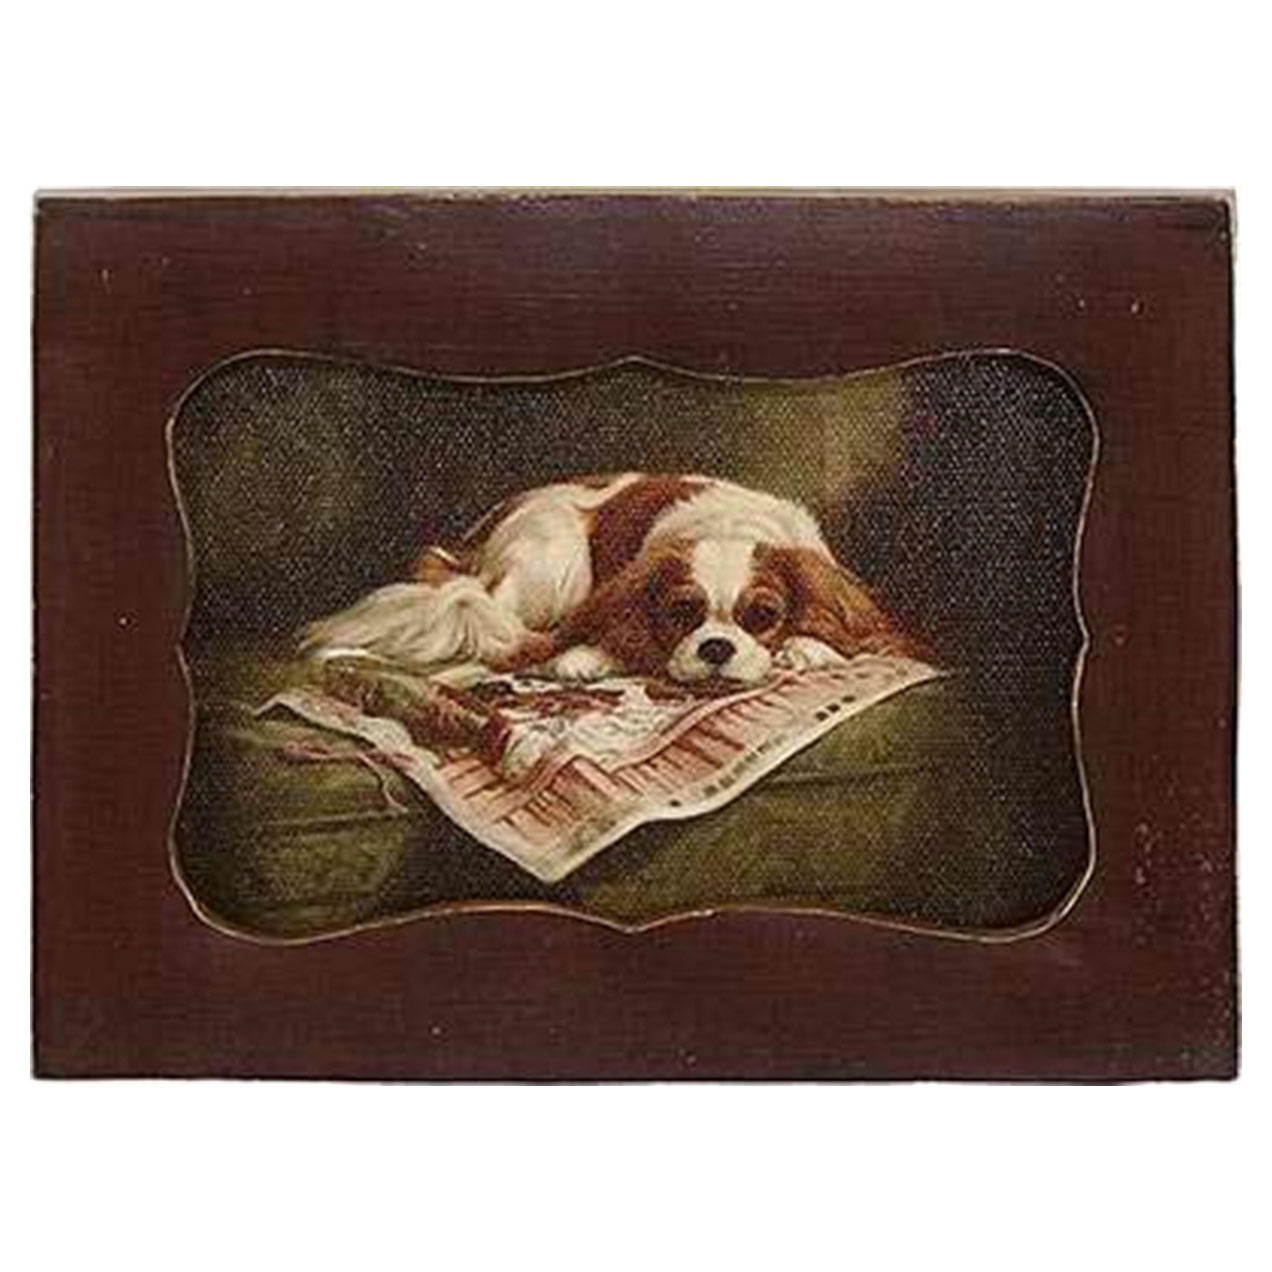 Картина в прямоугольной раме Glasar, спящая собака, масло, 10x2x12 см картина настольная в раме glasar масло 14x9x26см